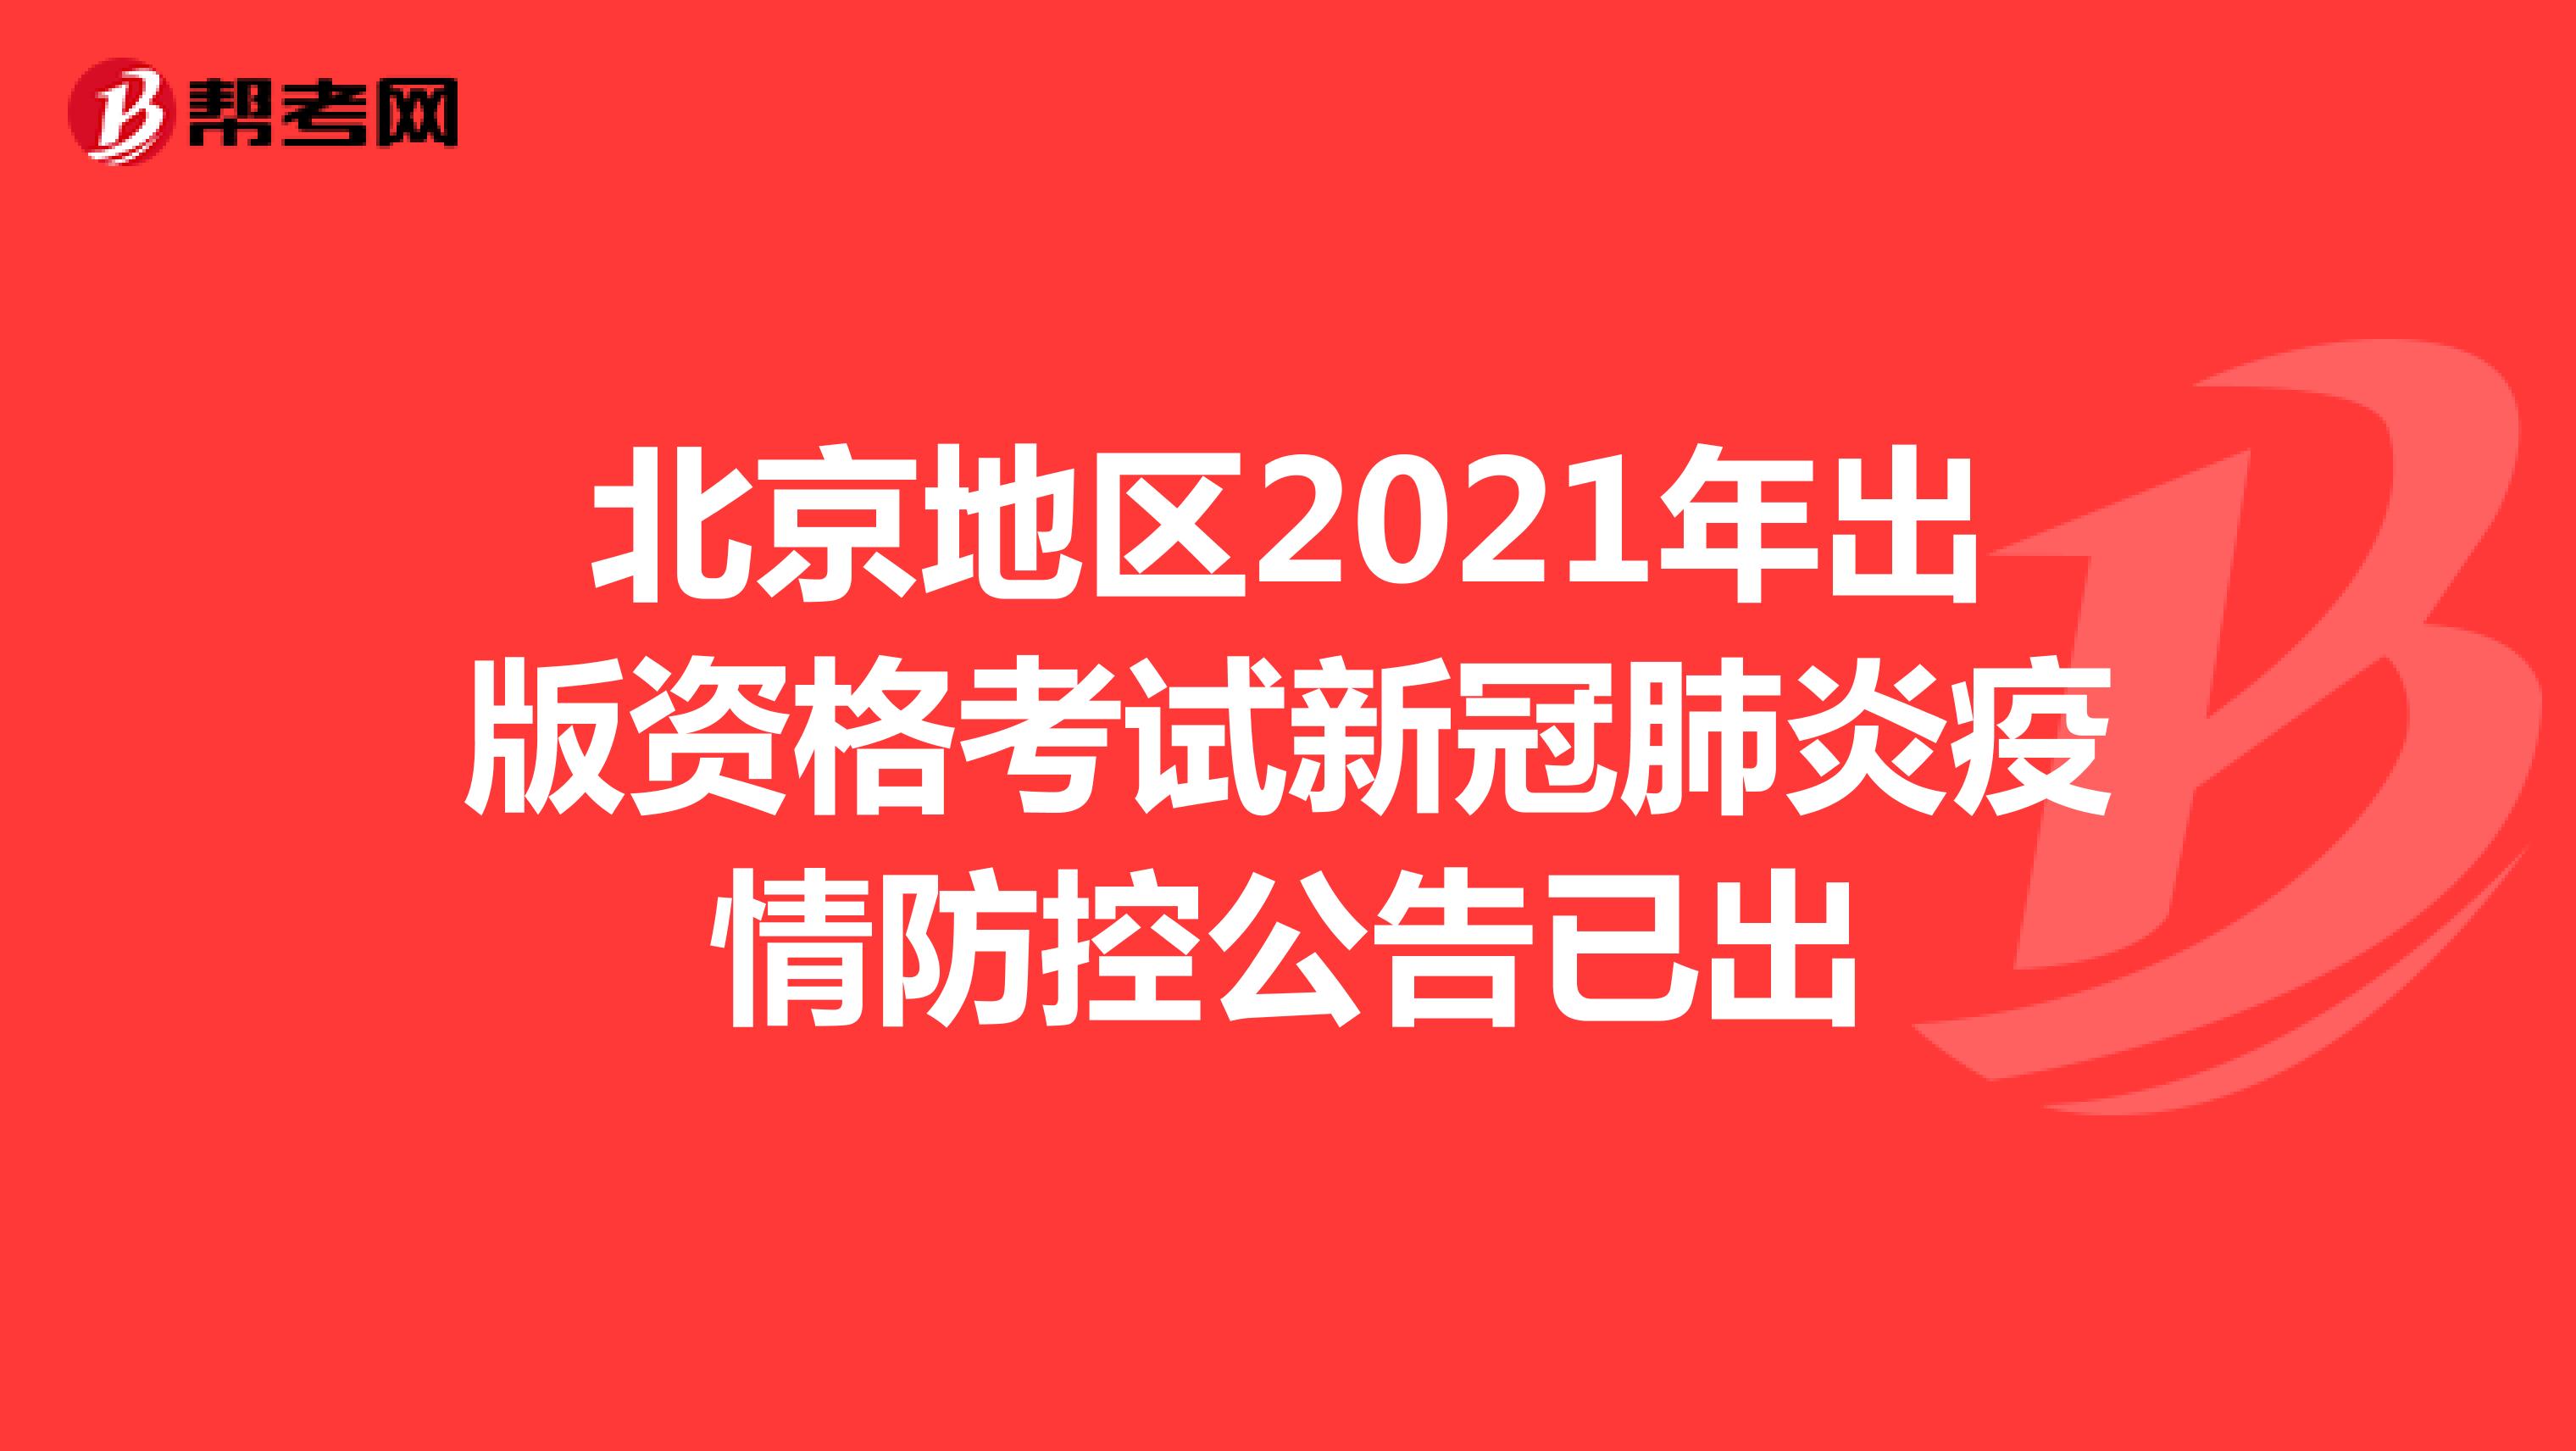 北京地区2021年出版资格考试新冠肺炎疫情防控公告已出